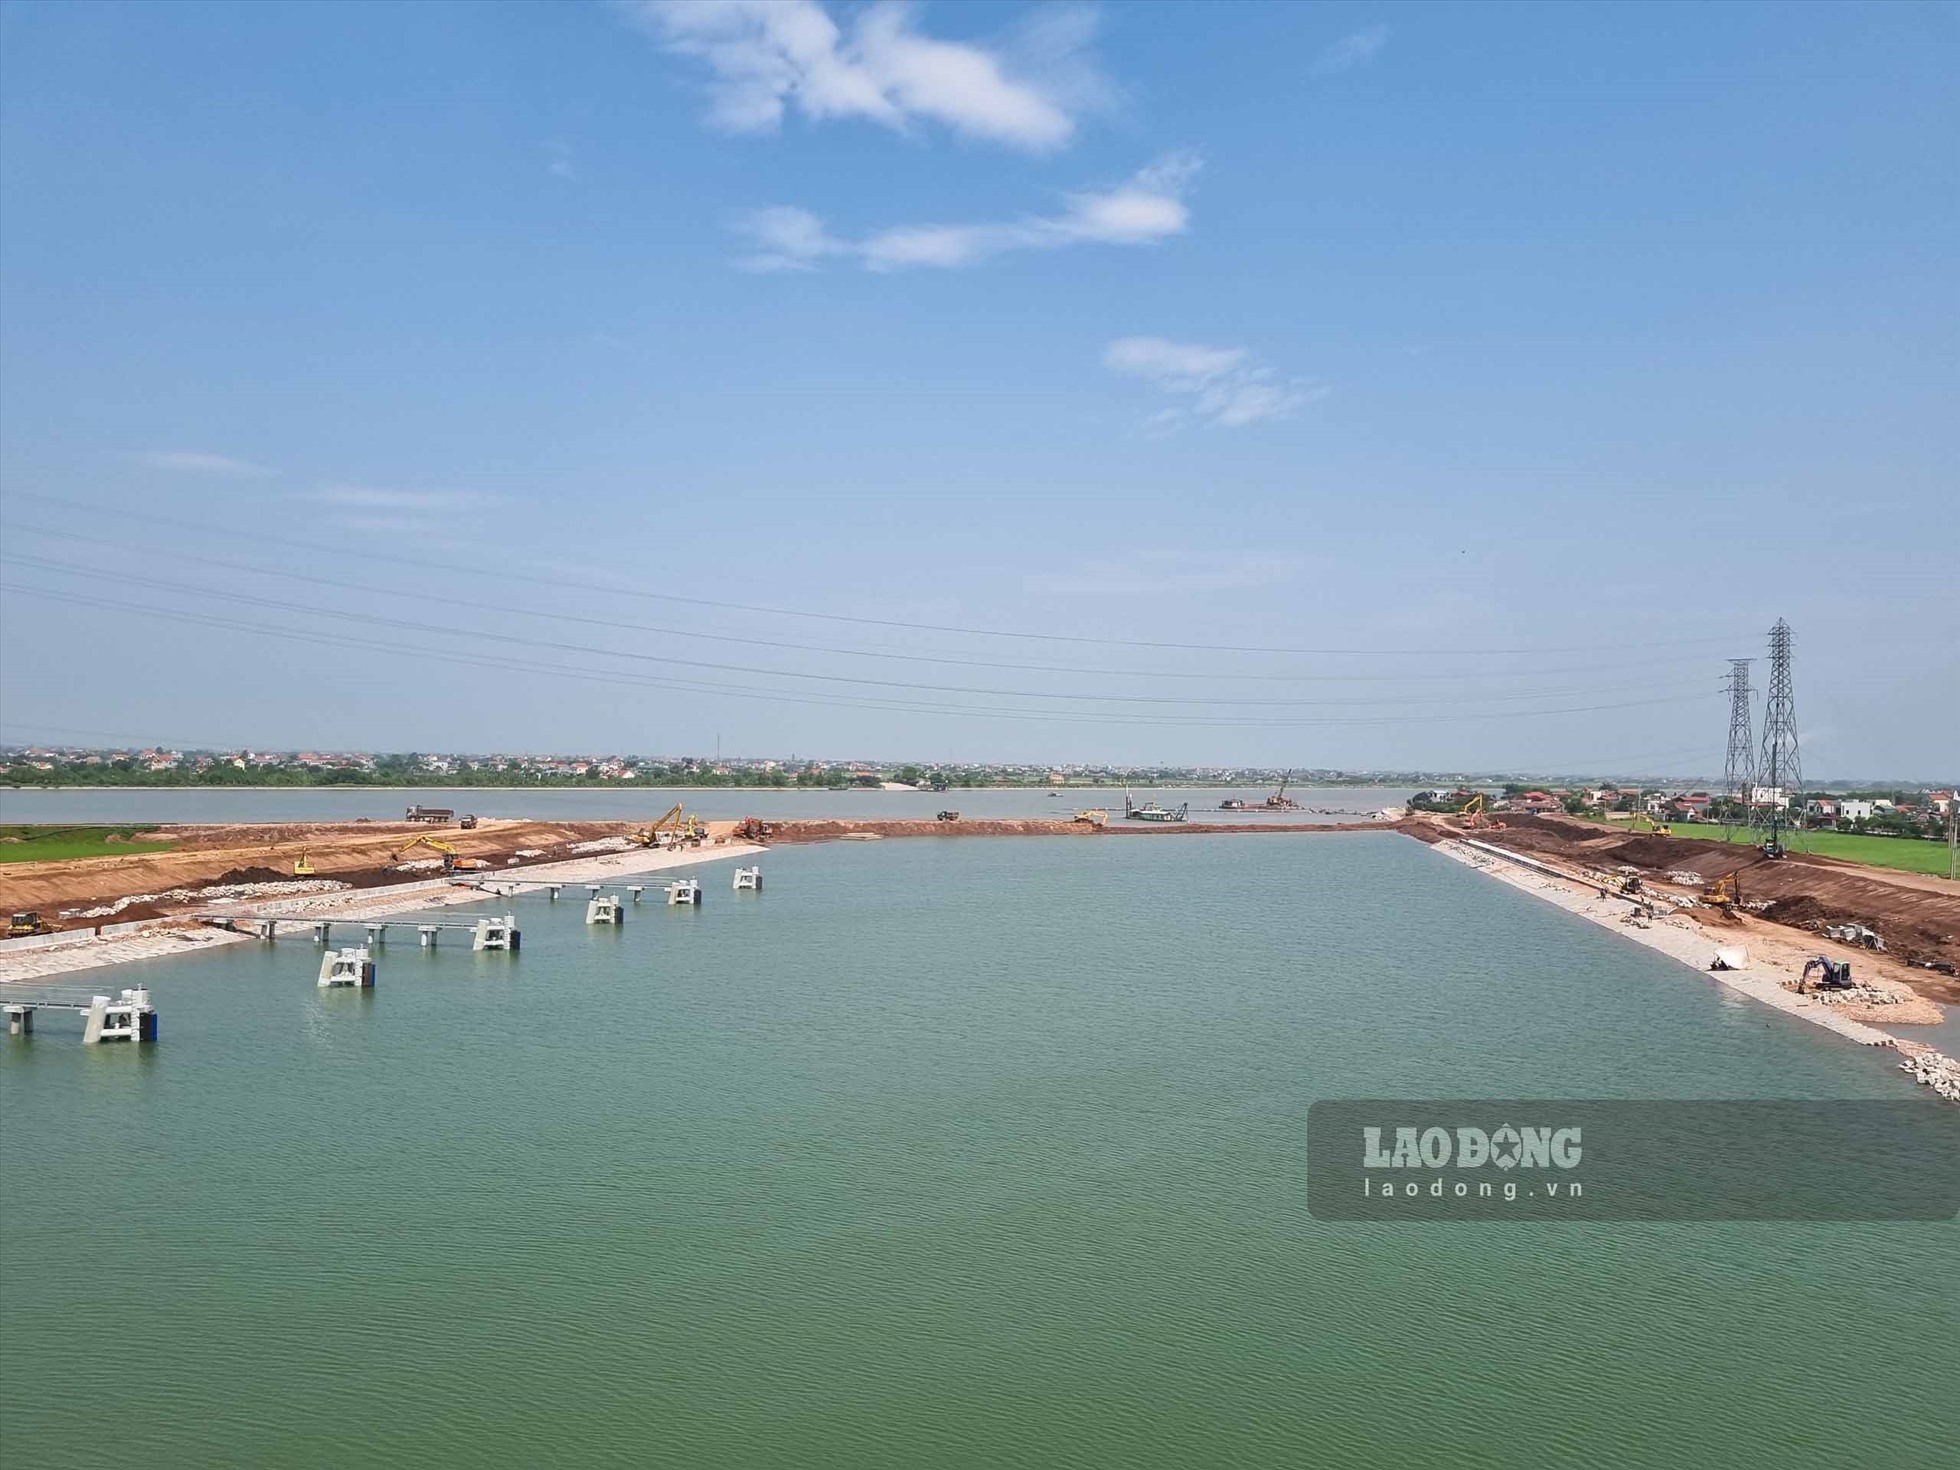 Cụm công trình kênh nối Đáy - Ninh Cơ nằm trên địa bàn huyện Nghĩa Hưng, tỉnh Nam Định, thuộc Dự án Phát triển giao thông vận tải khu vực đồng bằng Bắc Bộ, khởi công xây dựng tháng 11/2020. Dự án có tổng mức đầu tư 107.19 triệu USD, từ nguồn vốn vay Ngân hàng Thế giới (WB) và vốn đối ứng trong nước.